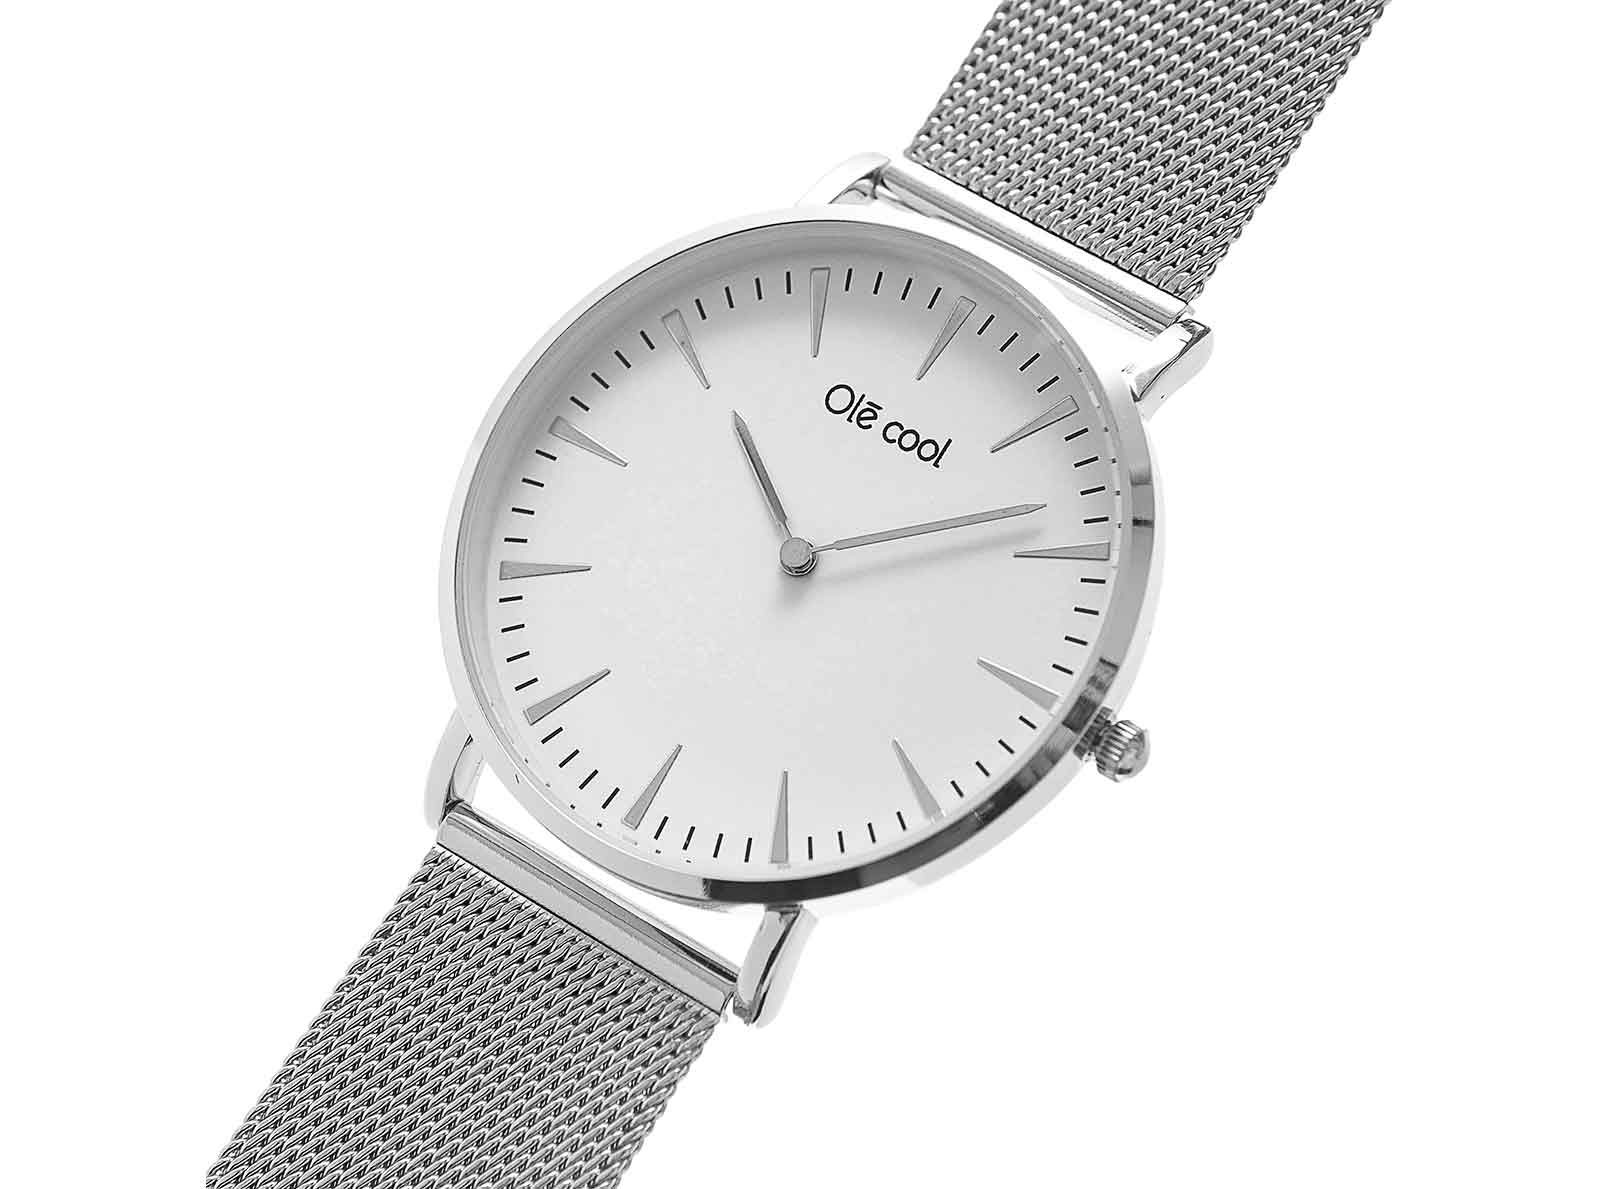 reloj en color plata para mujer de la marca olecool